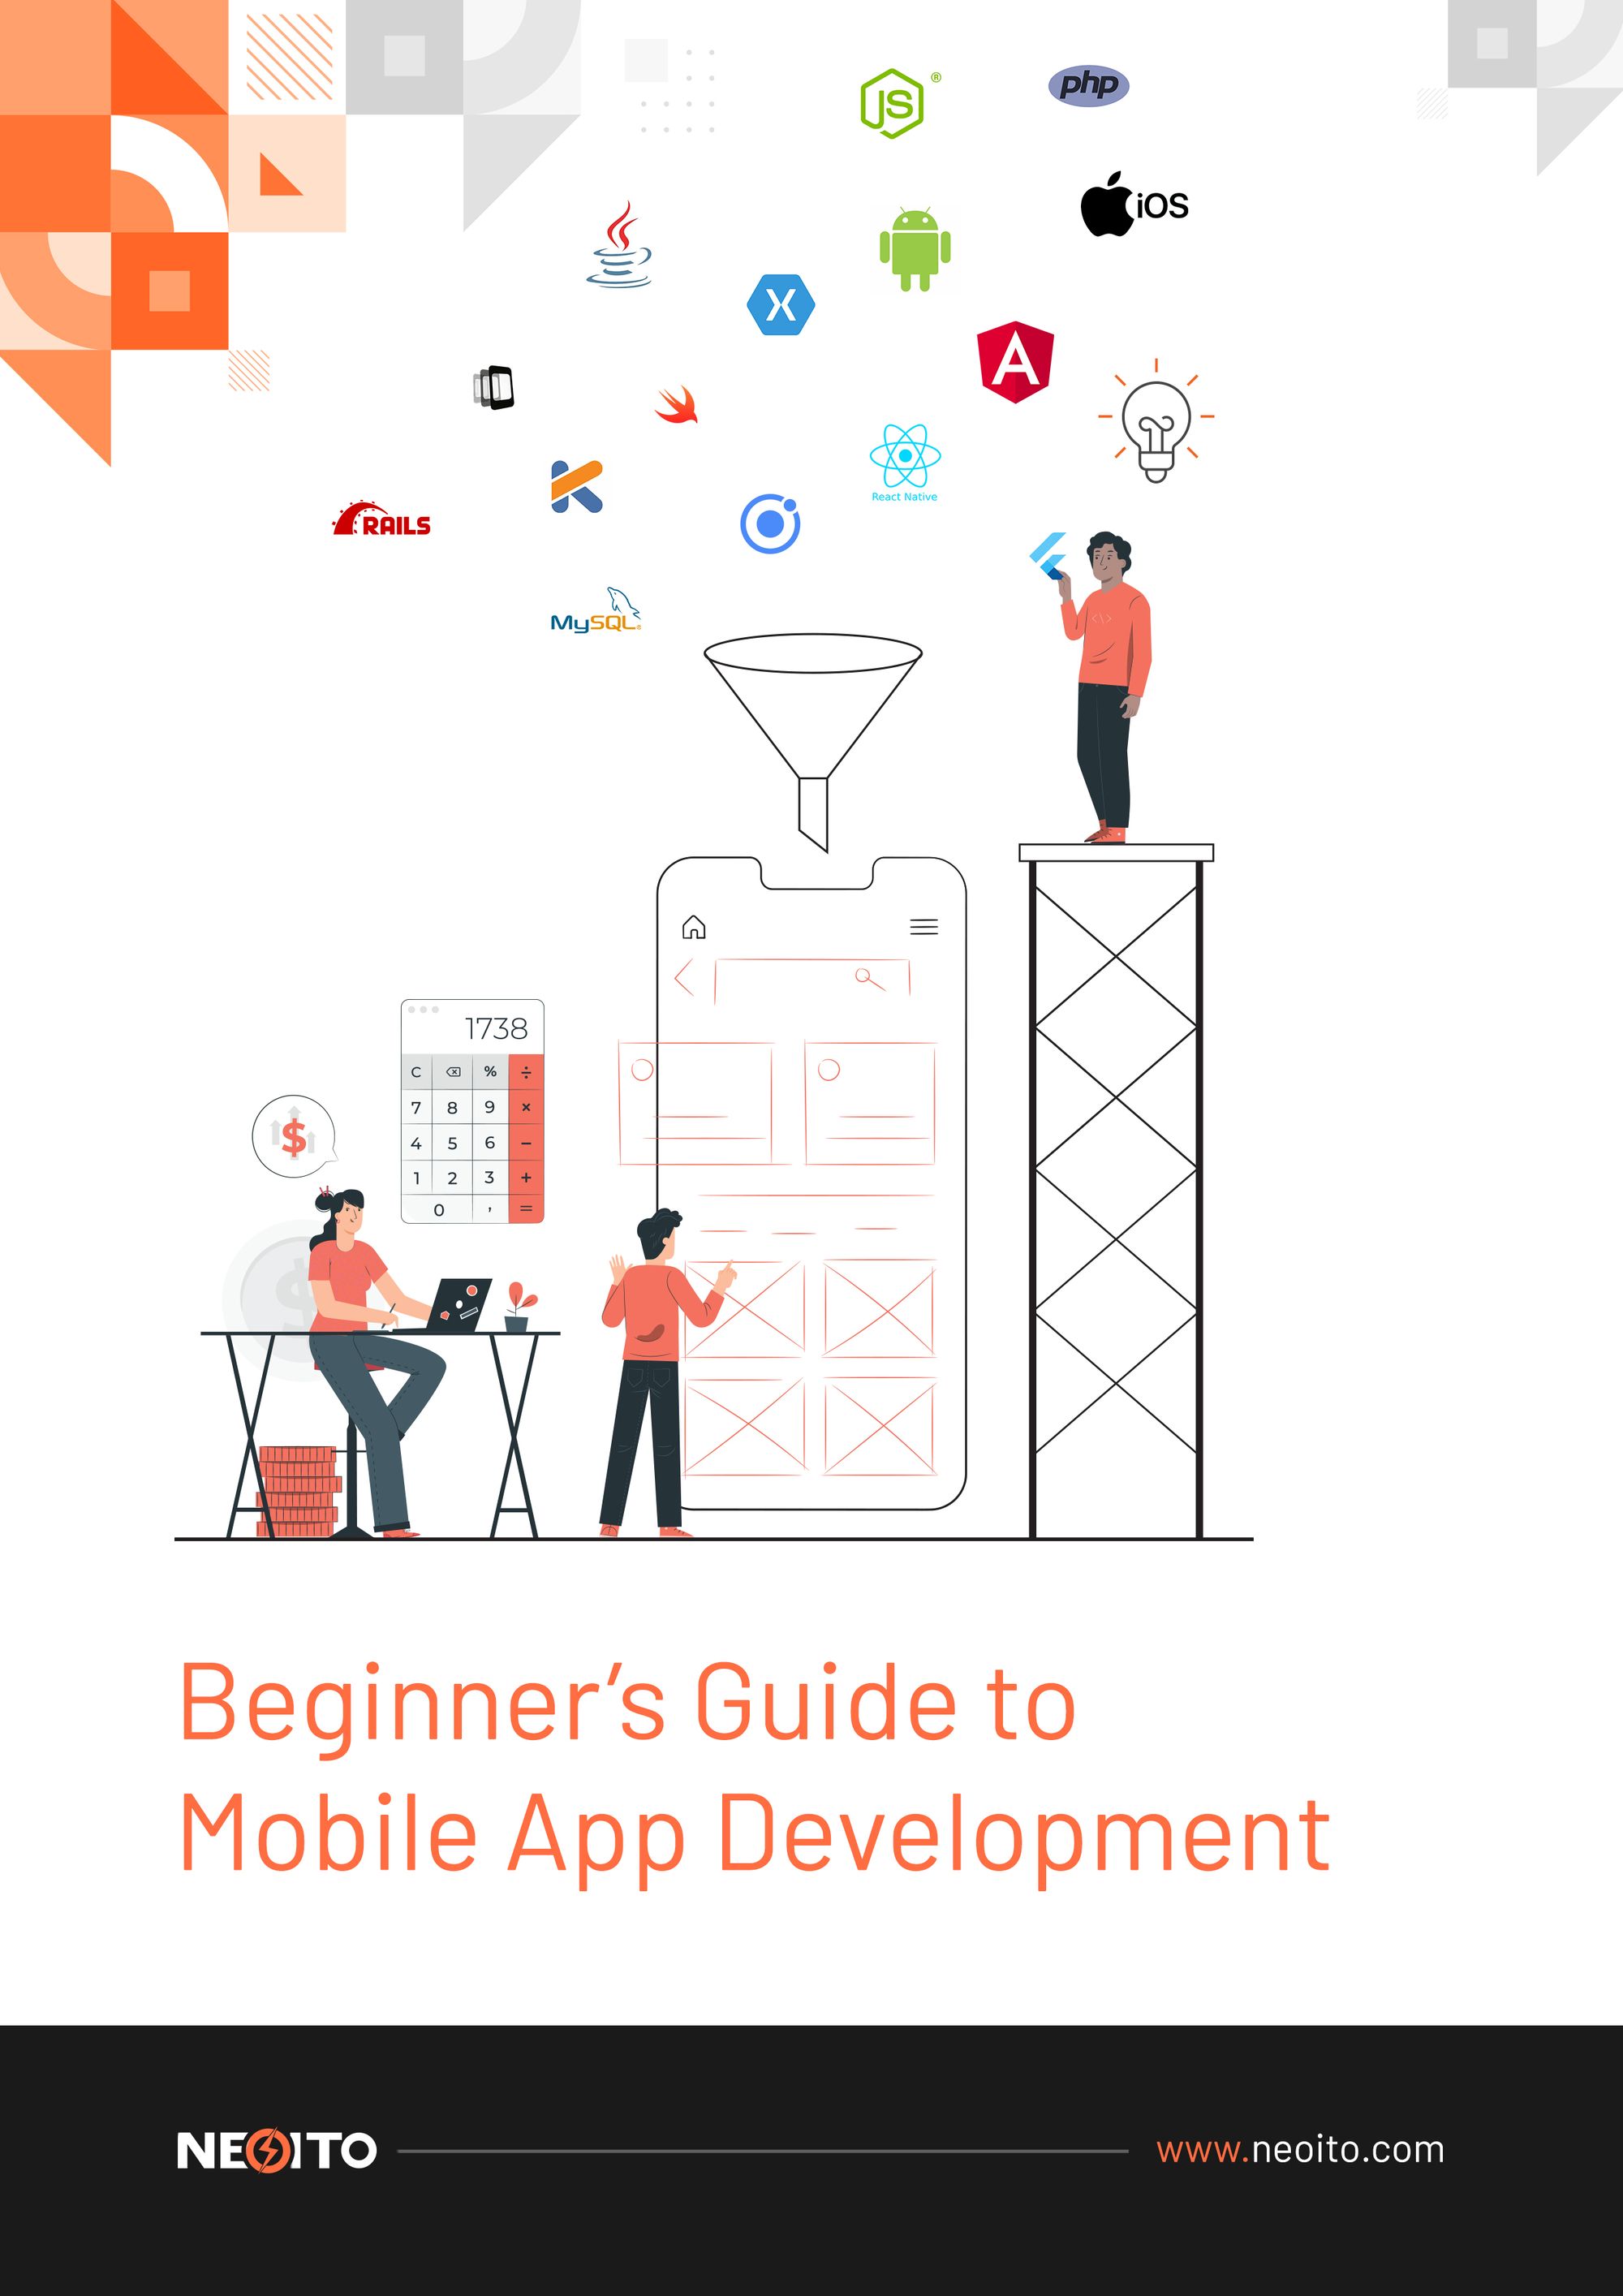 Mobile App Development Guide For Beginners